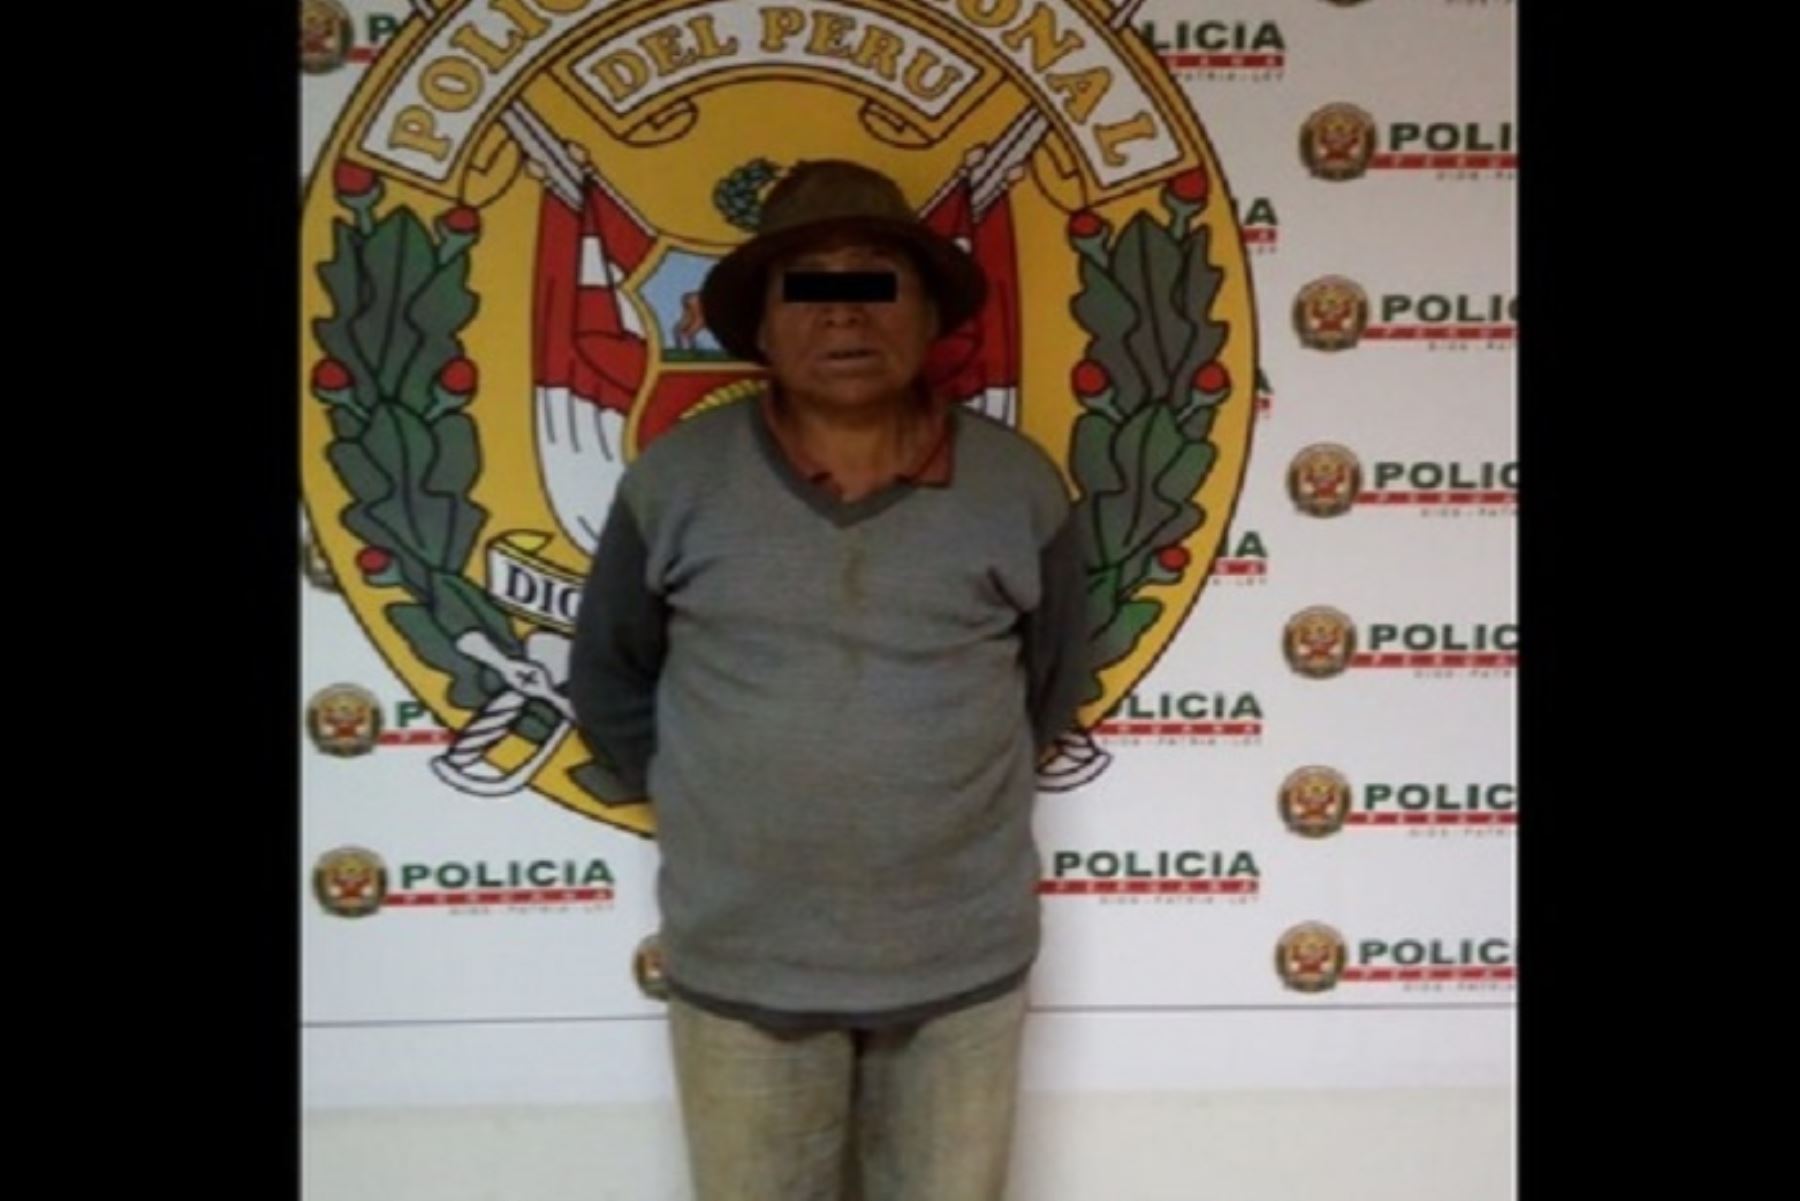 Efectivos de la Dirección de Inteligencia (Dirin) de la Policía Nacional del Perú capturaron en la región Huánuco a Teodoro Rafael Juipa, quien era buscado por el delito de violación, informó el Ministerio del Interior.